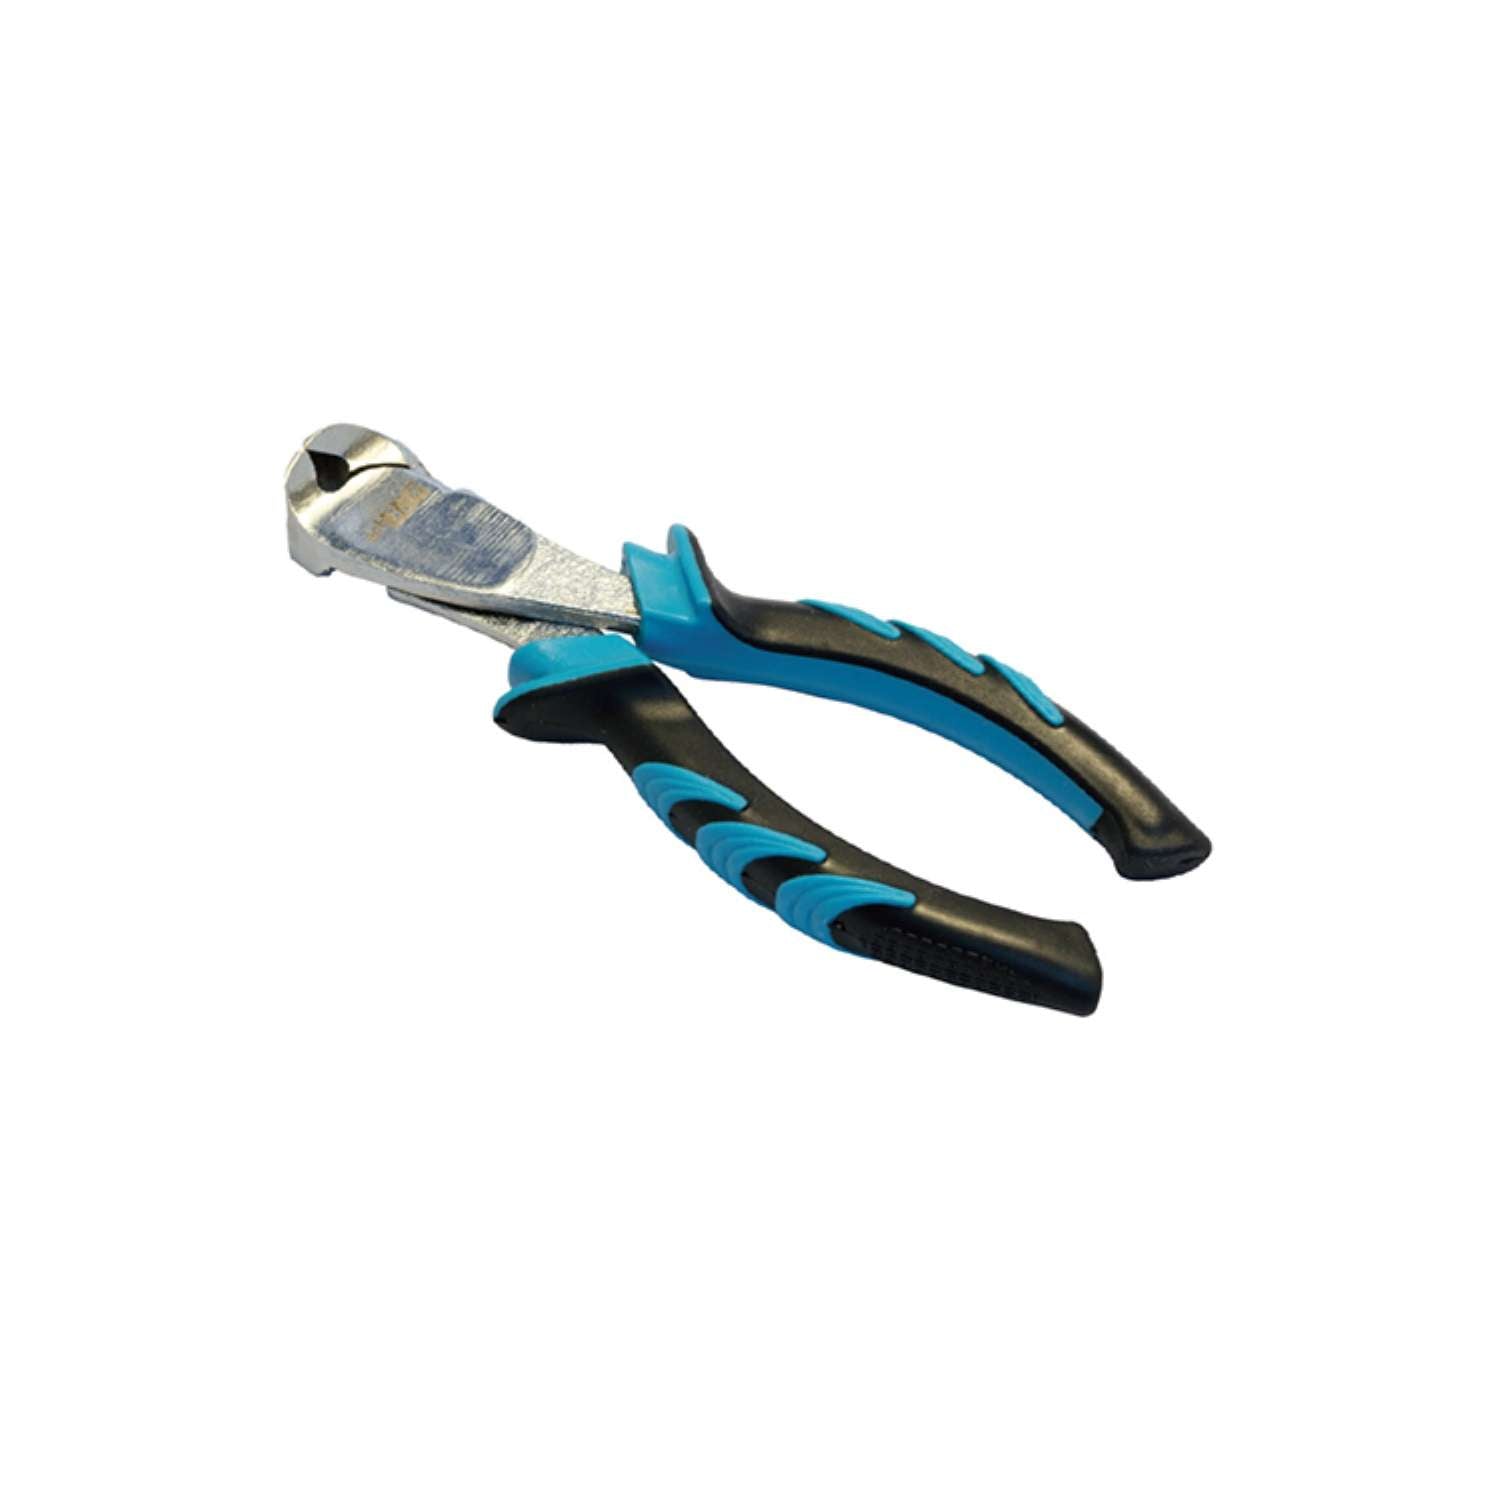 End cutter chrome vanadium anti-slip ergonomic handle 150 mm - UM 30 TF15